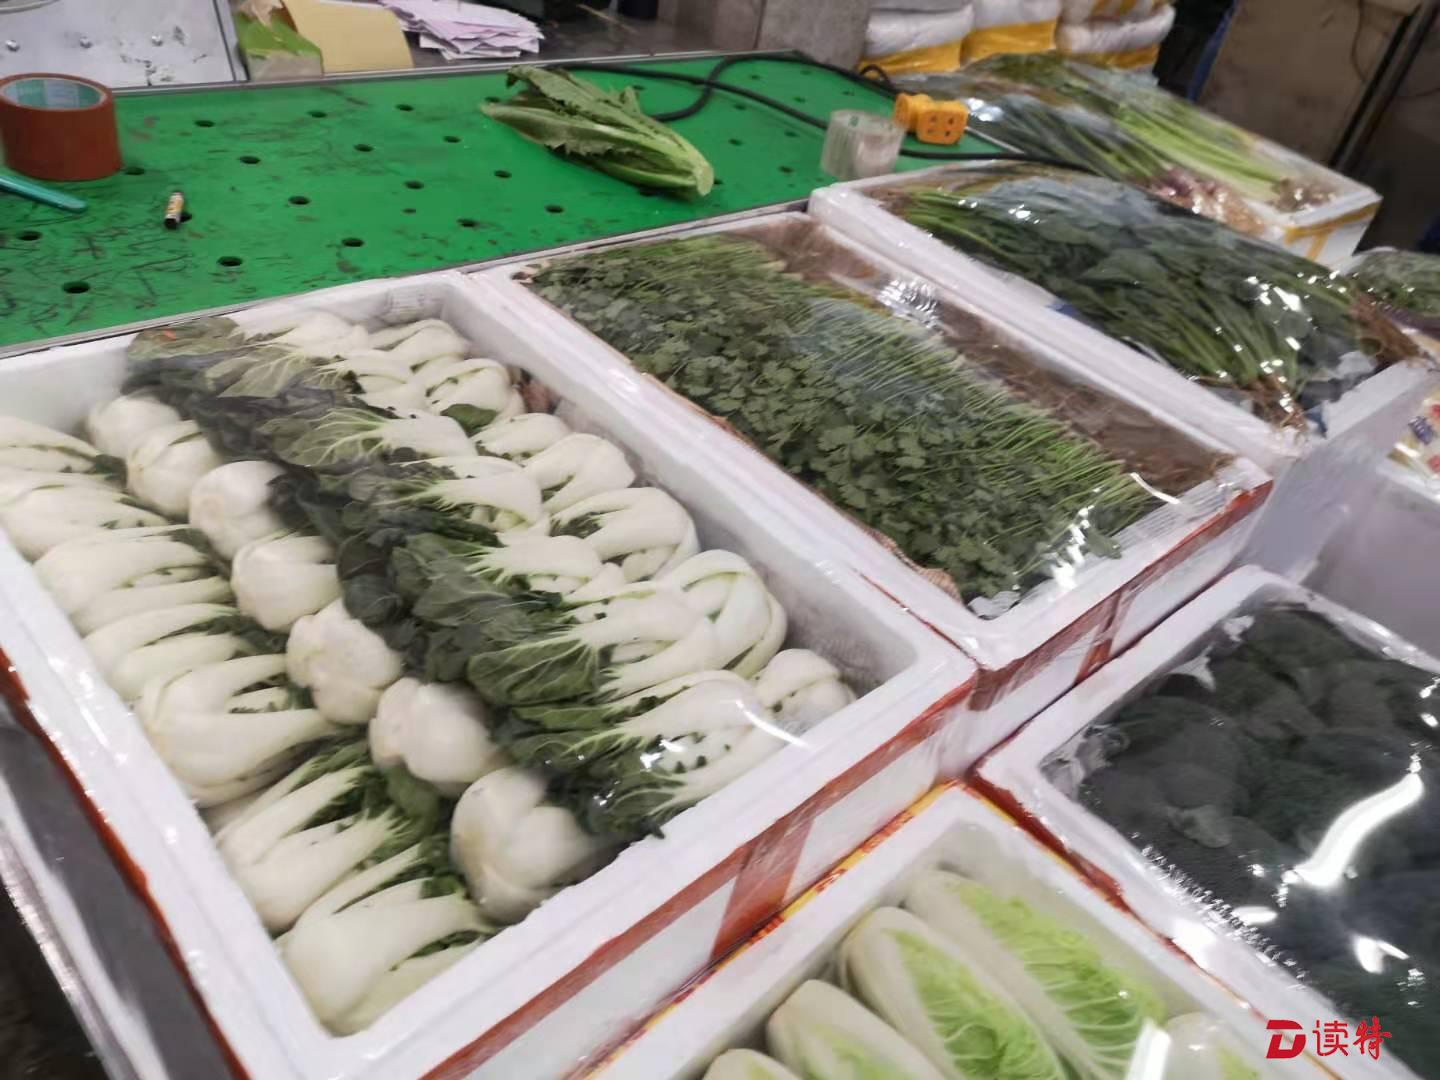 海吉星负责人介绍,1月29日深圳海吉星农副产品库存量约2.